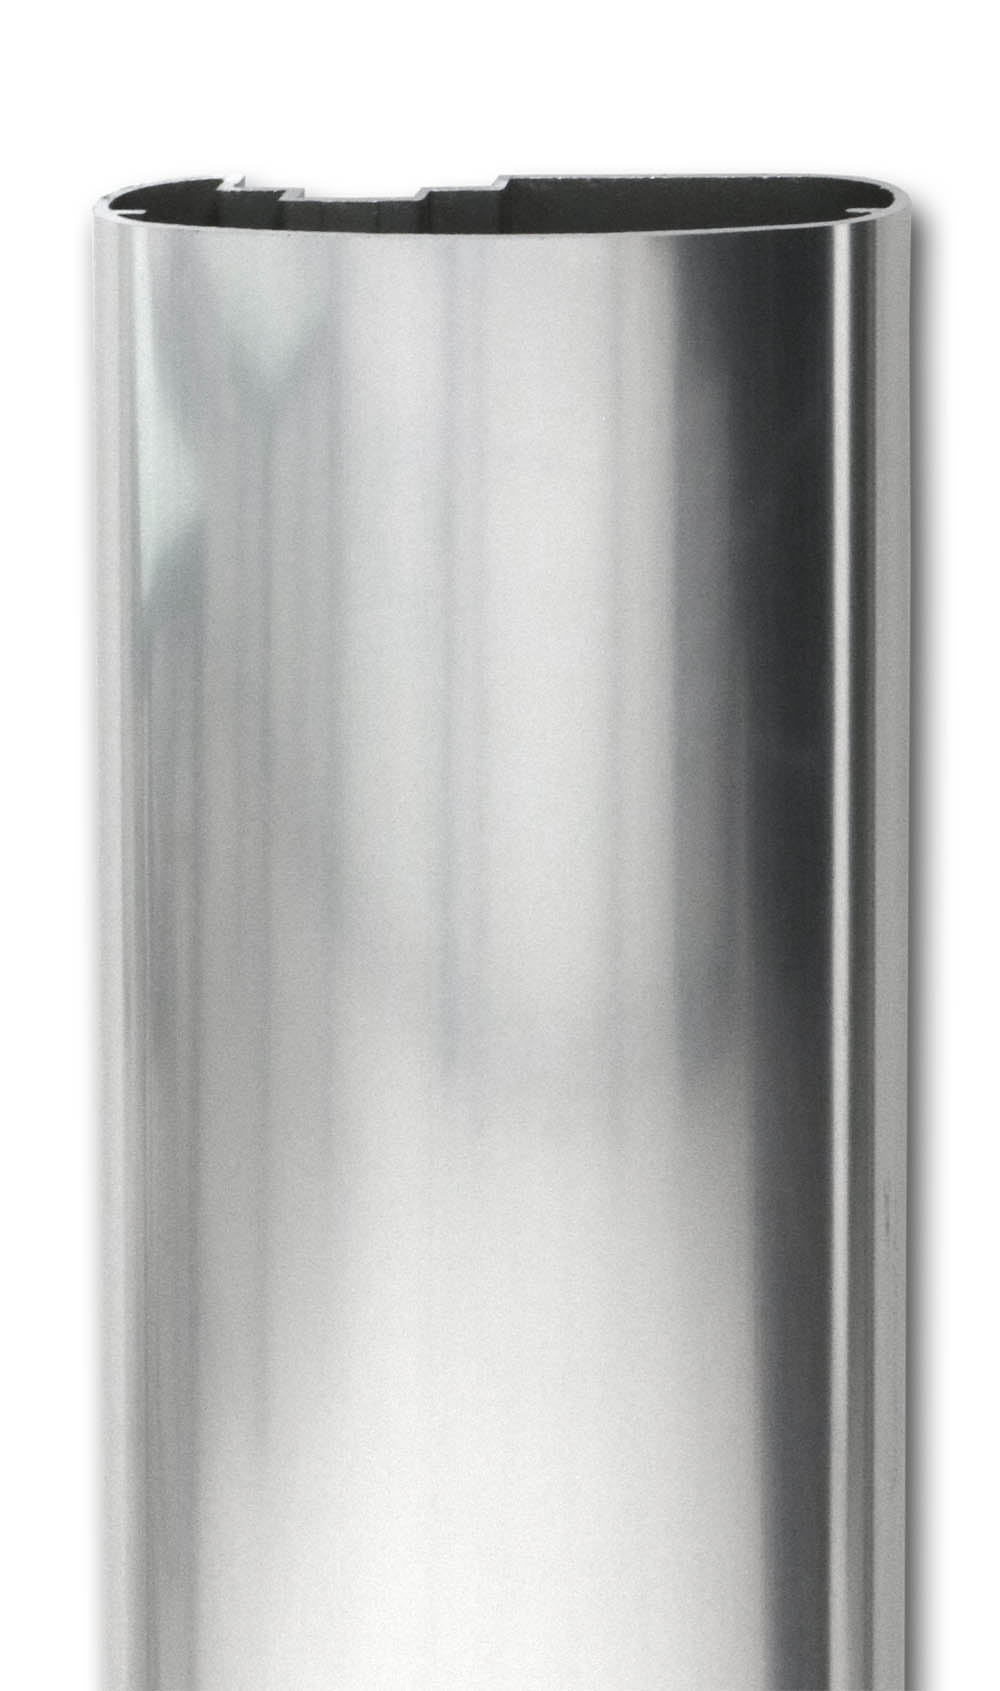 Profilé de main-courante aluminium largeur 80mm X 30mm  finition inox. Longueur livrable de 1m à 3,30m